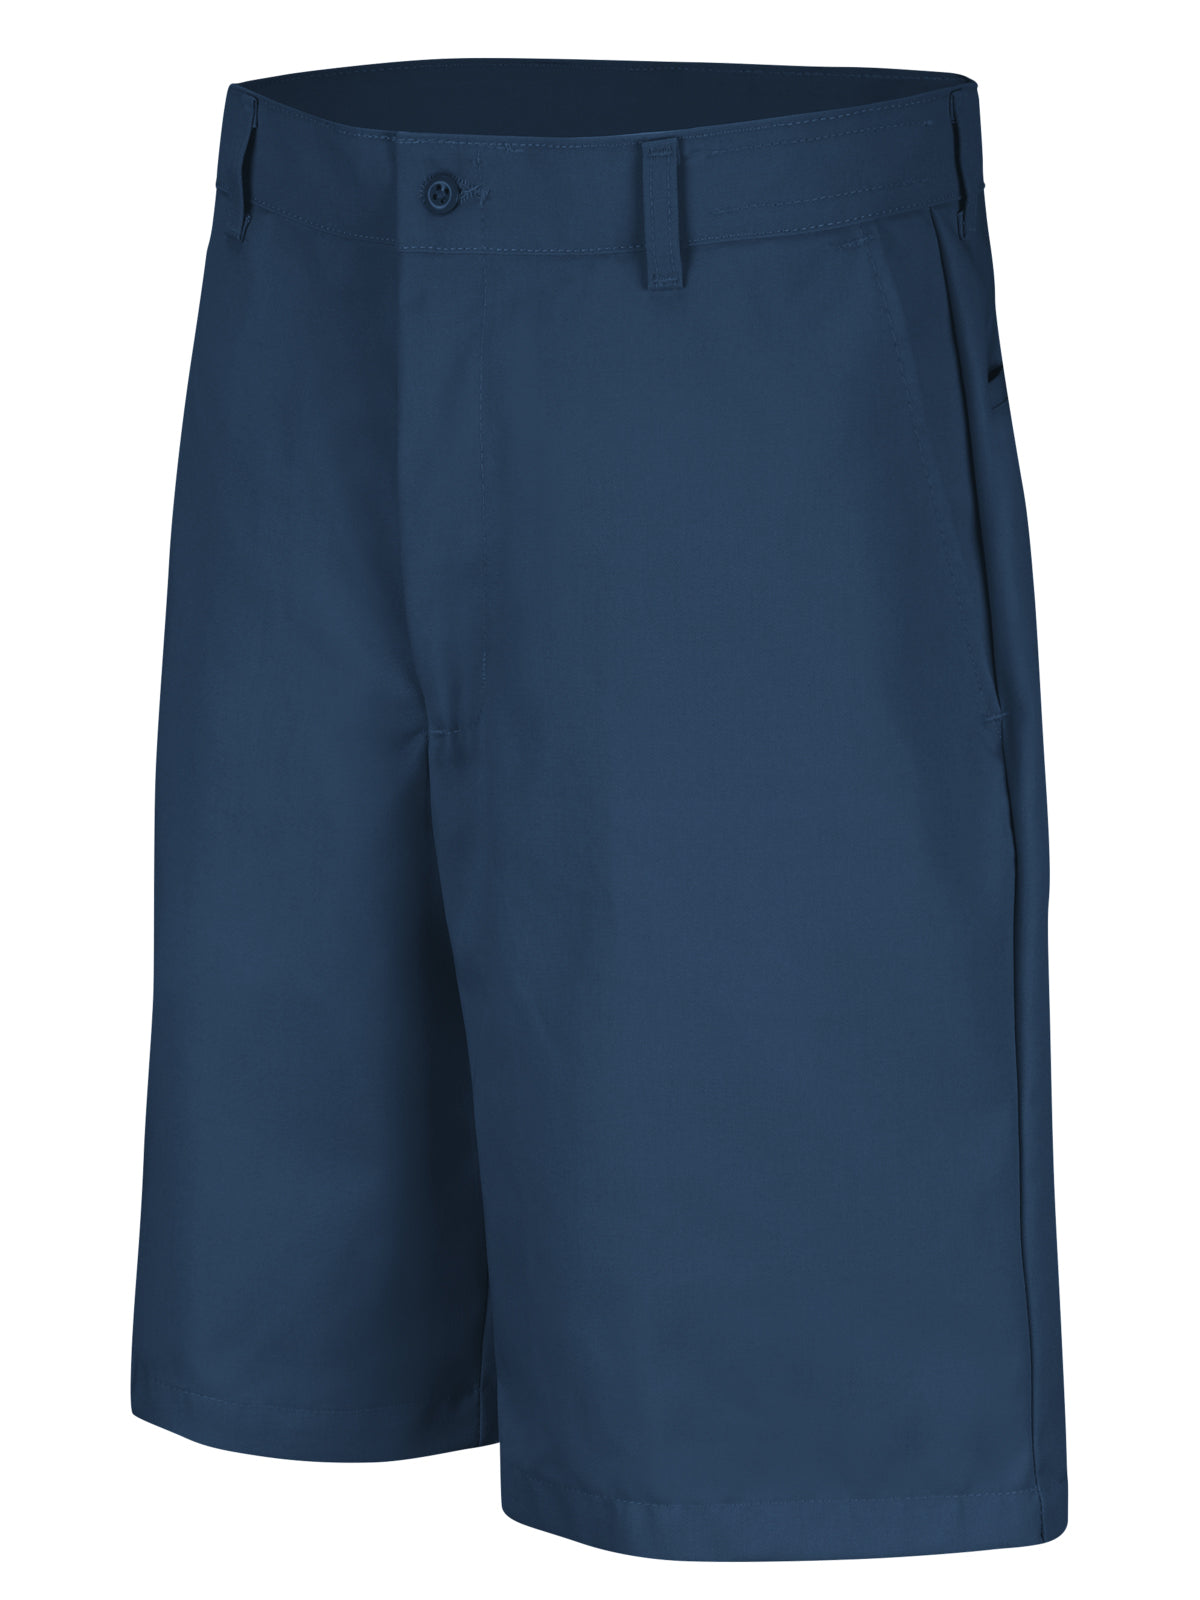 Men's Cotton Casual Plain Shorts - PC26 - Navy